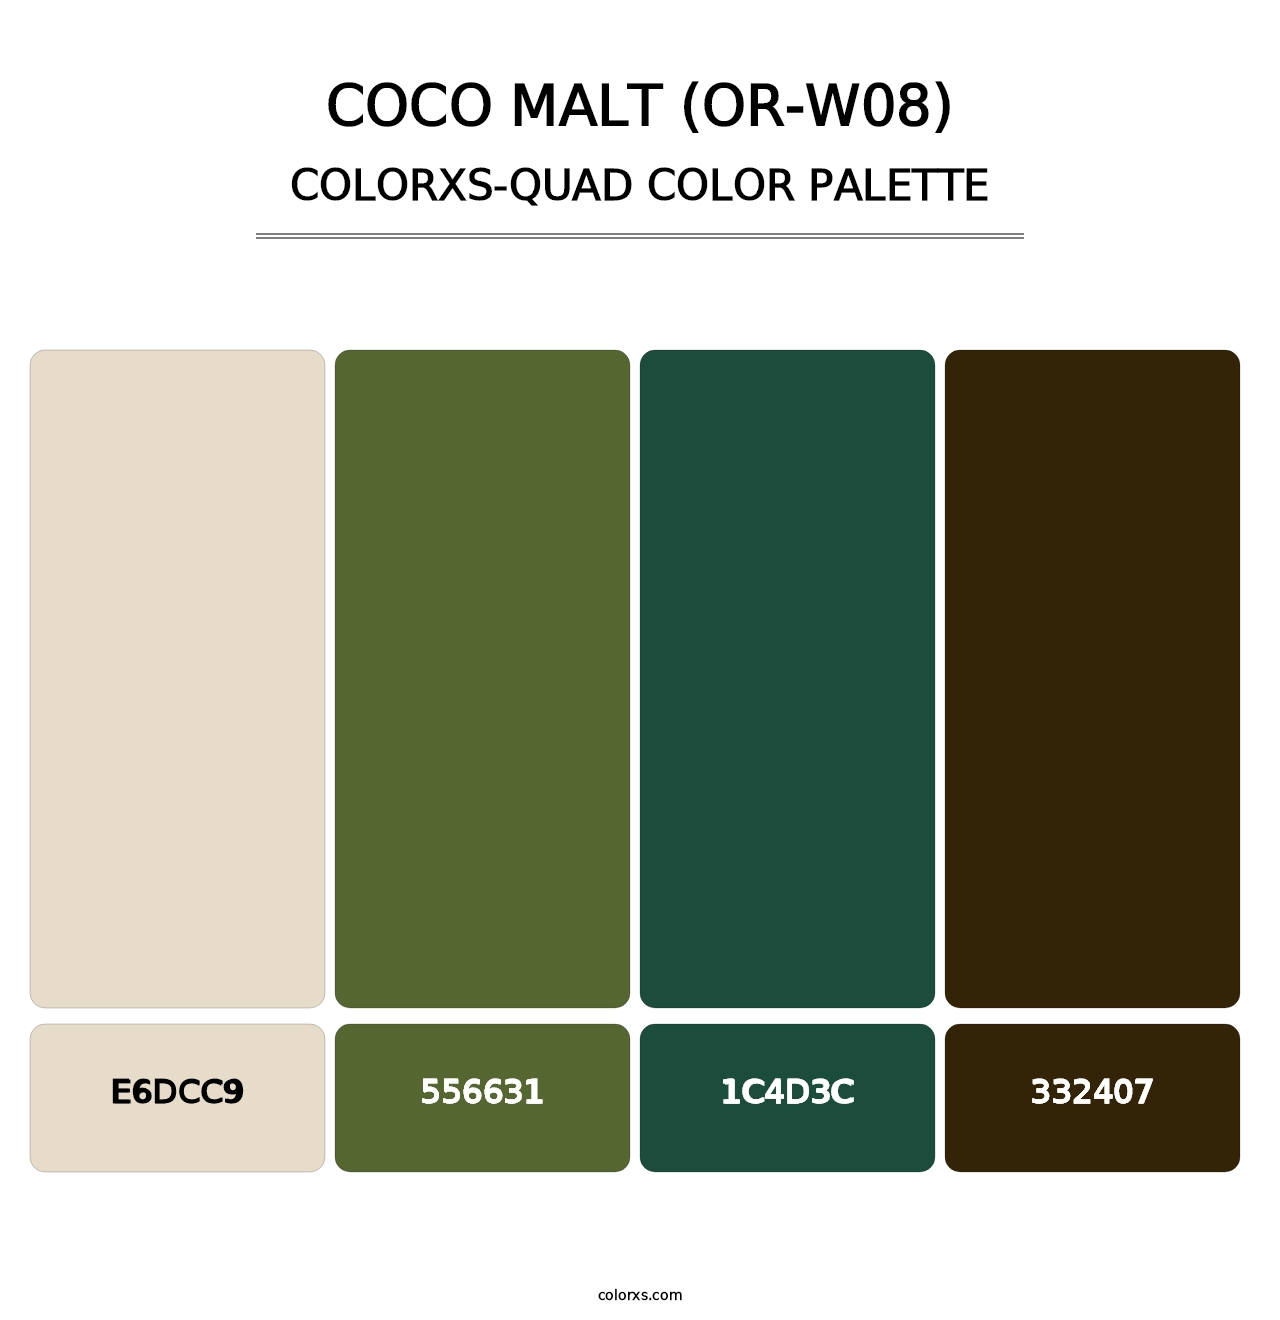 Coco Malt (OR-W08) - Colorxs Quad Palette